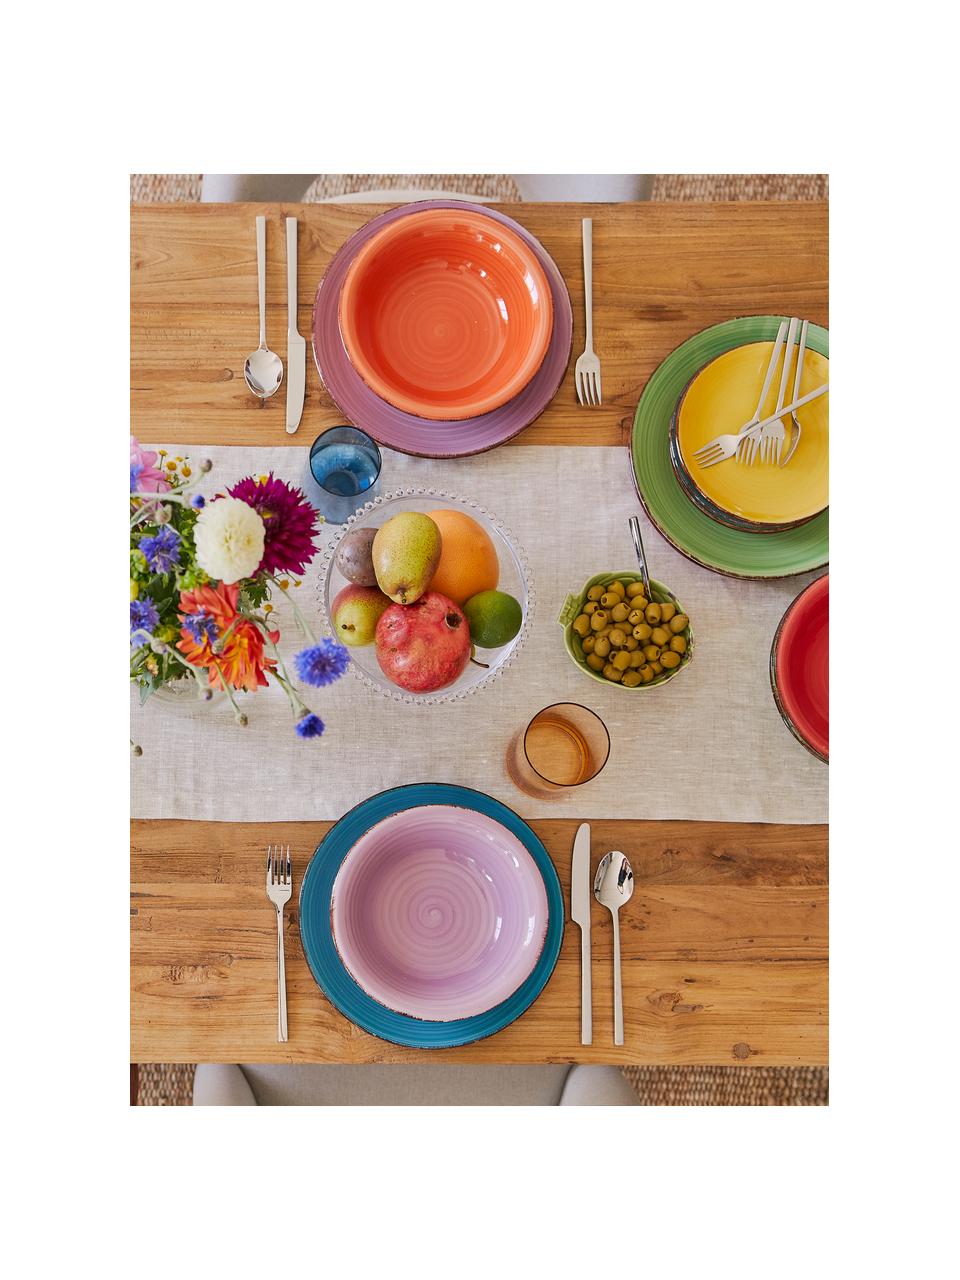 Gekleurde handbeschilderde serviesset Baita, 6 personen (18-delig), Handbeschilderd keramiek (hard dolomiet), Geel, lila, turquoise, oranje, rood, groen, Set met verschillende formaten